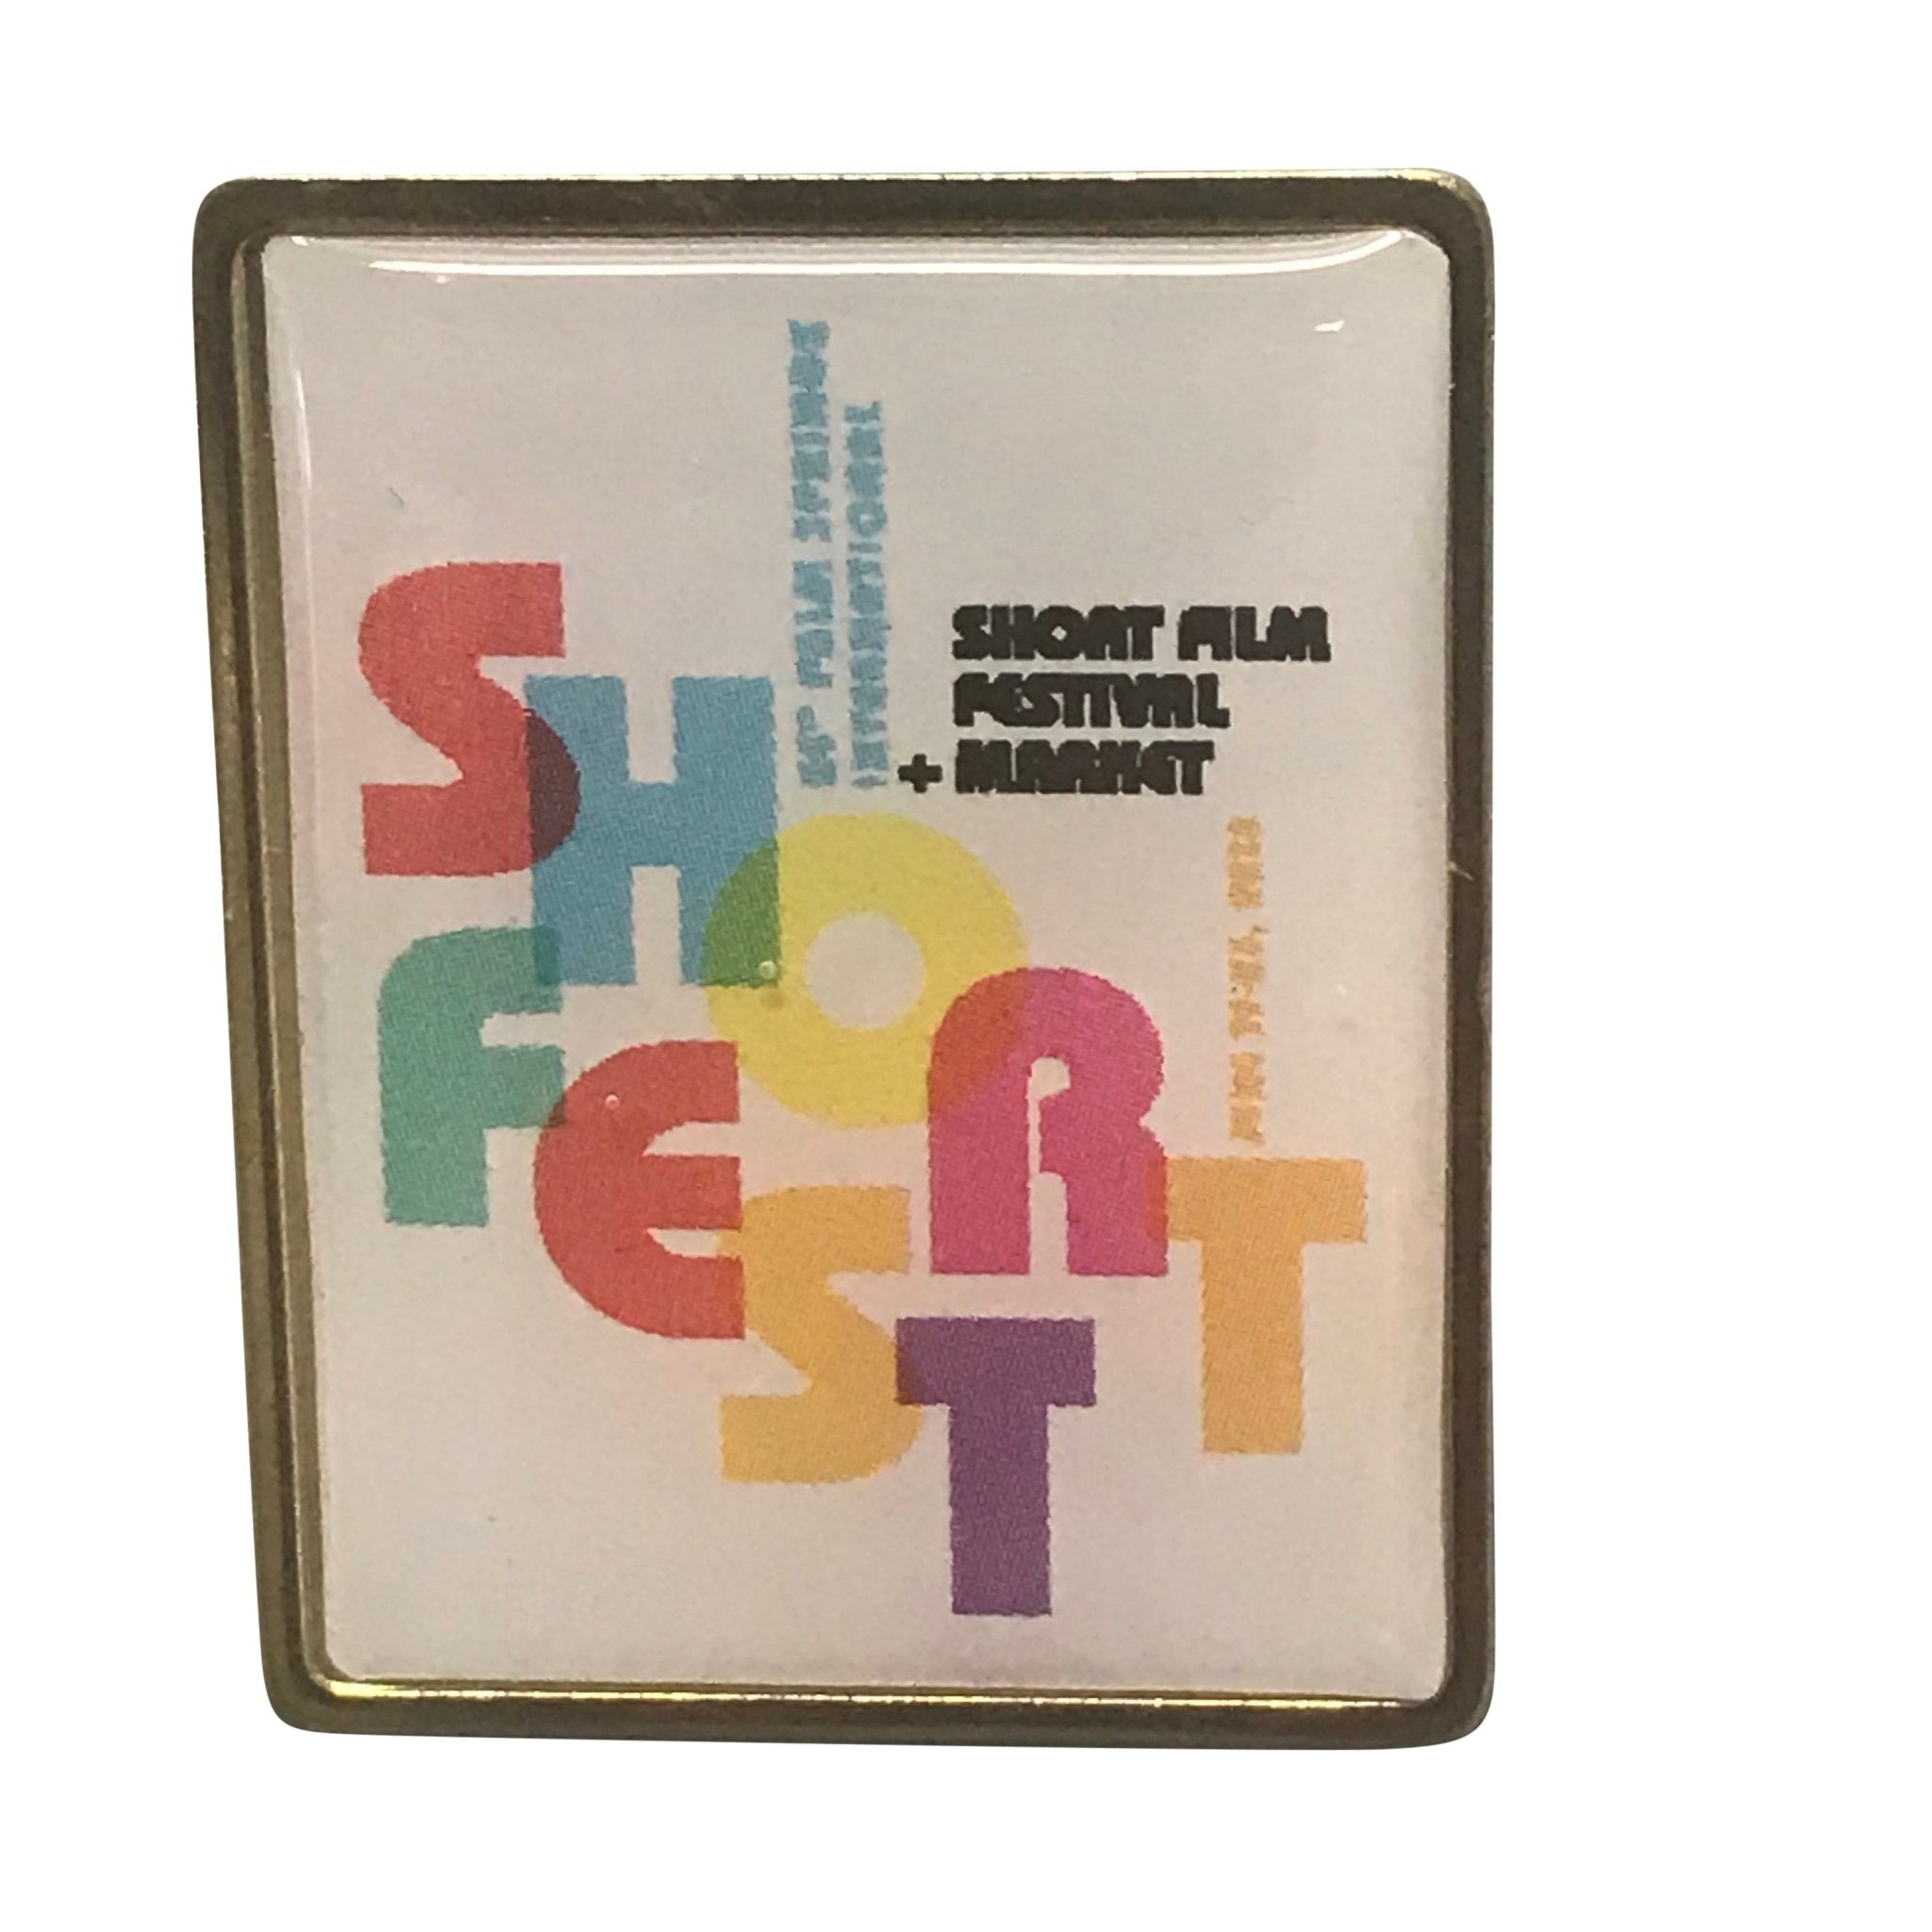 Shortfest 2018 Lapel Pin - Destination PSP